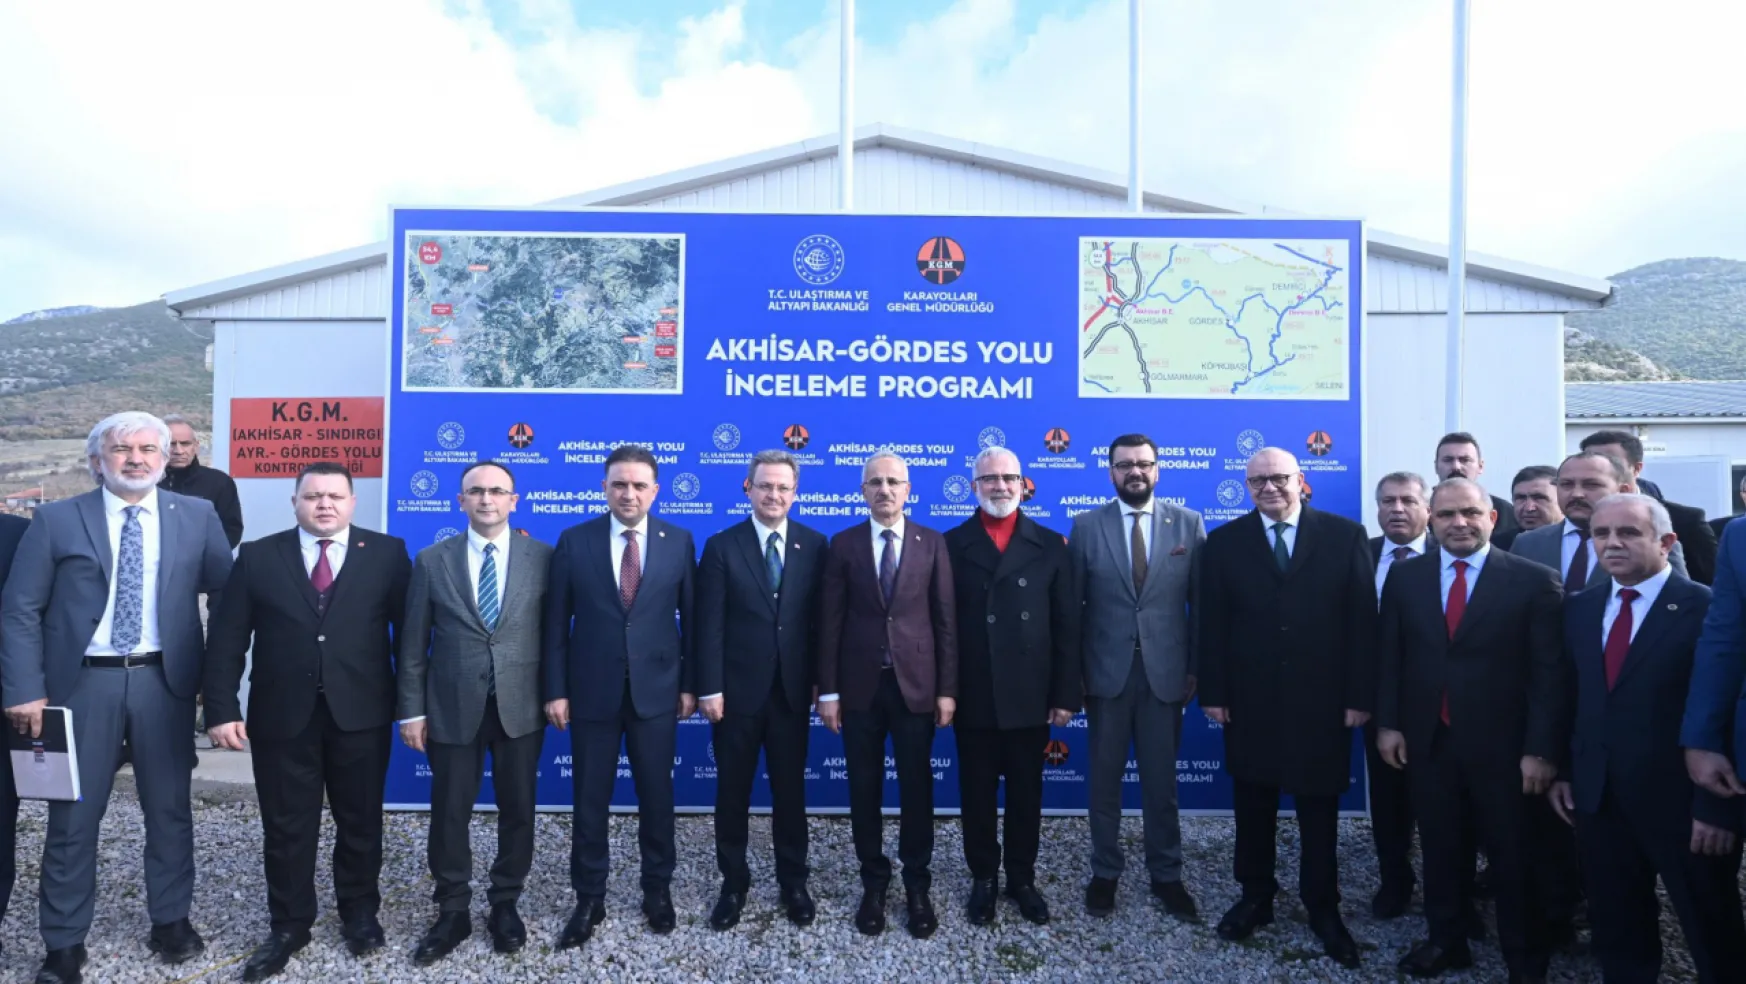 Ulaştırma Ve Altyapı Bakanı Abdulkadir Uraloğlu:   Akhisar-Gördes Yolu'nu 2025'te Hizmete Açacağız